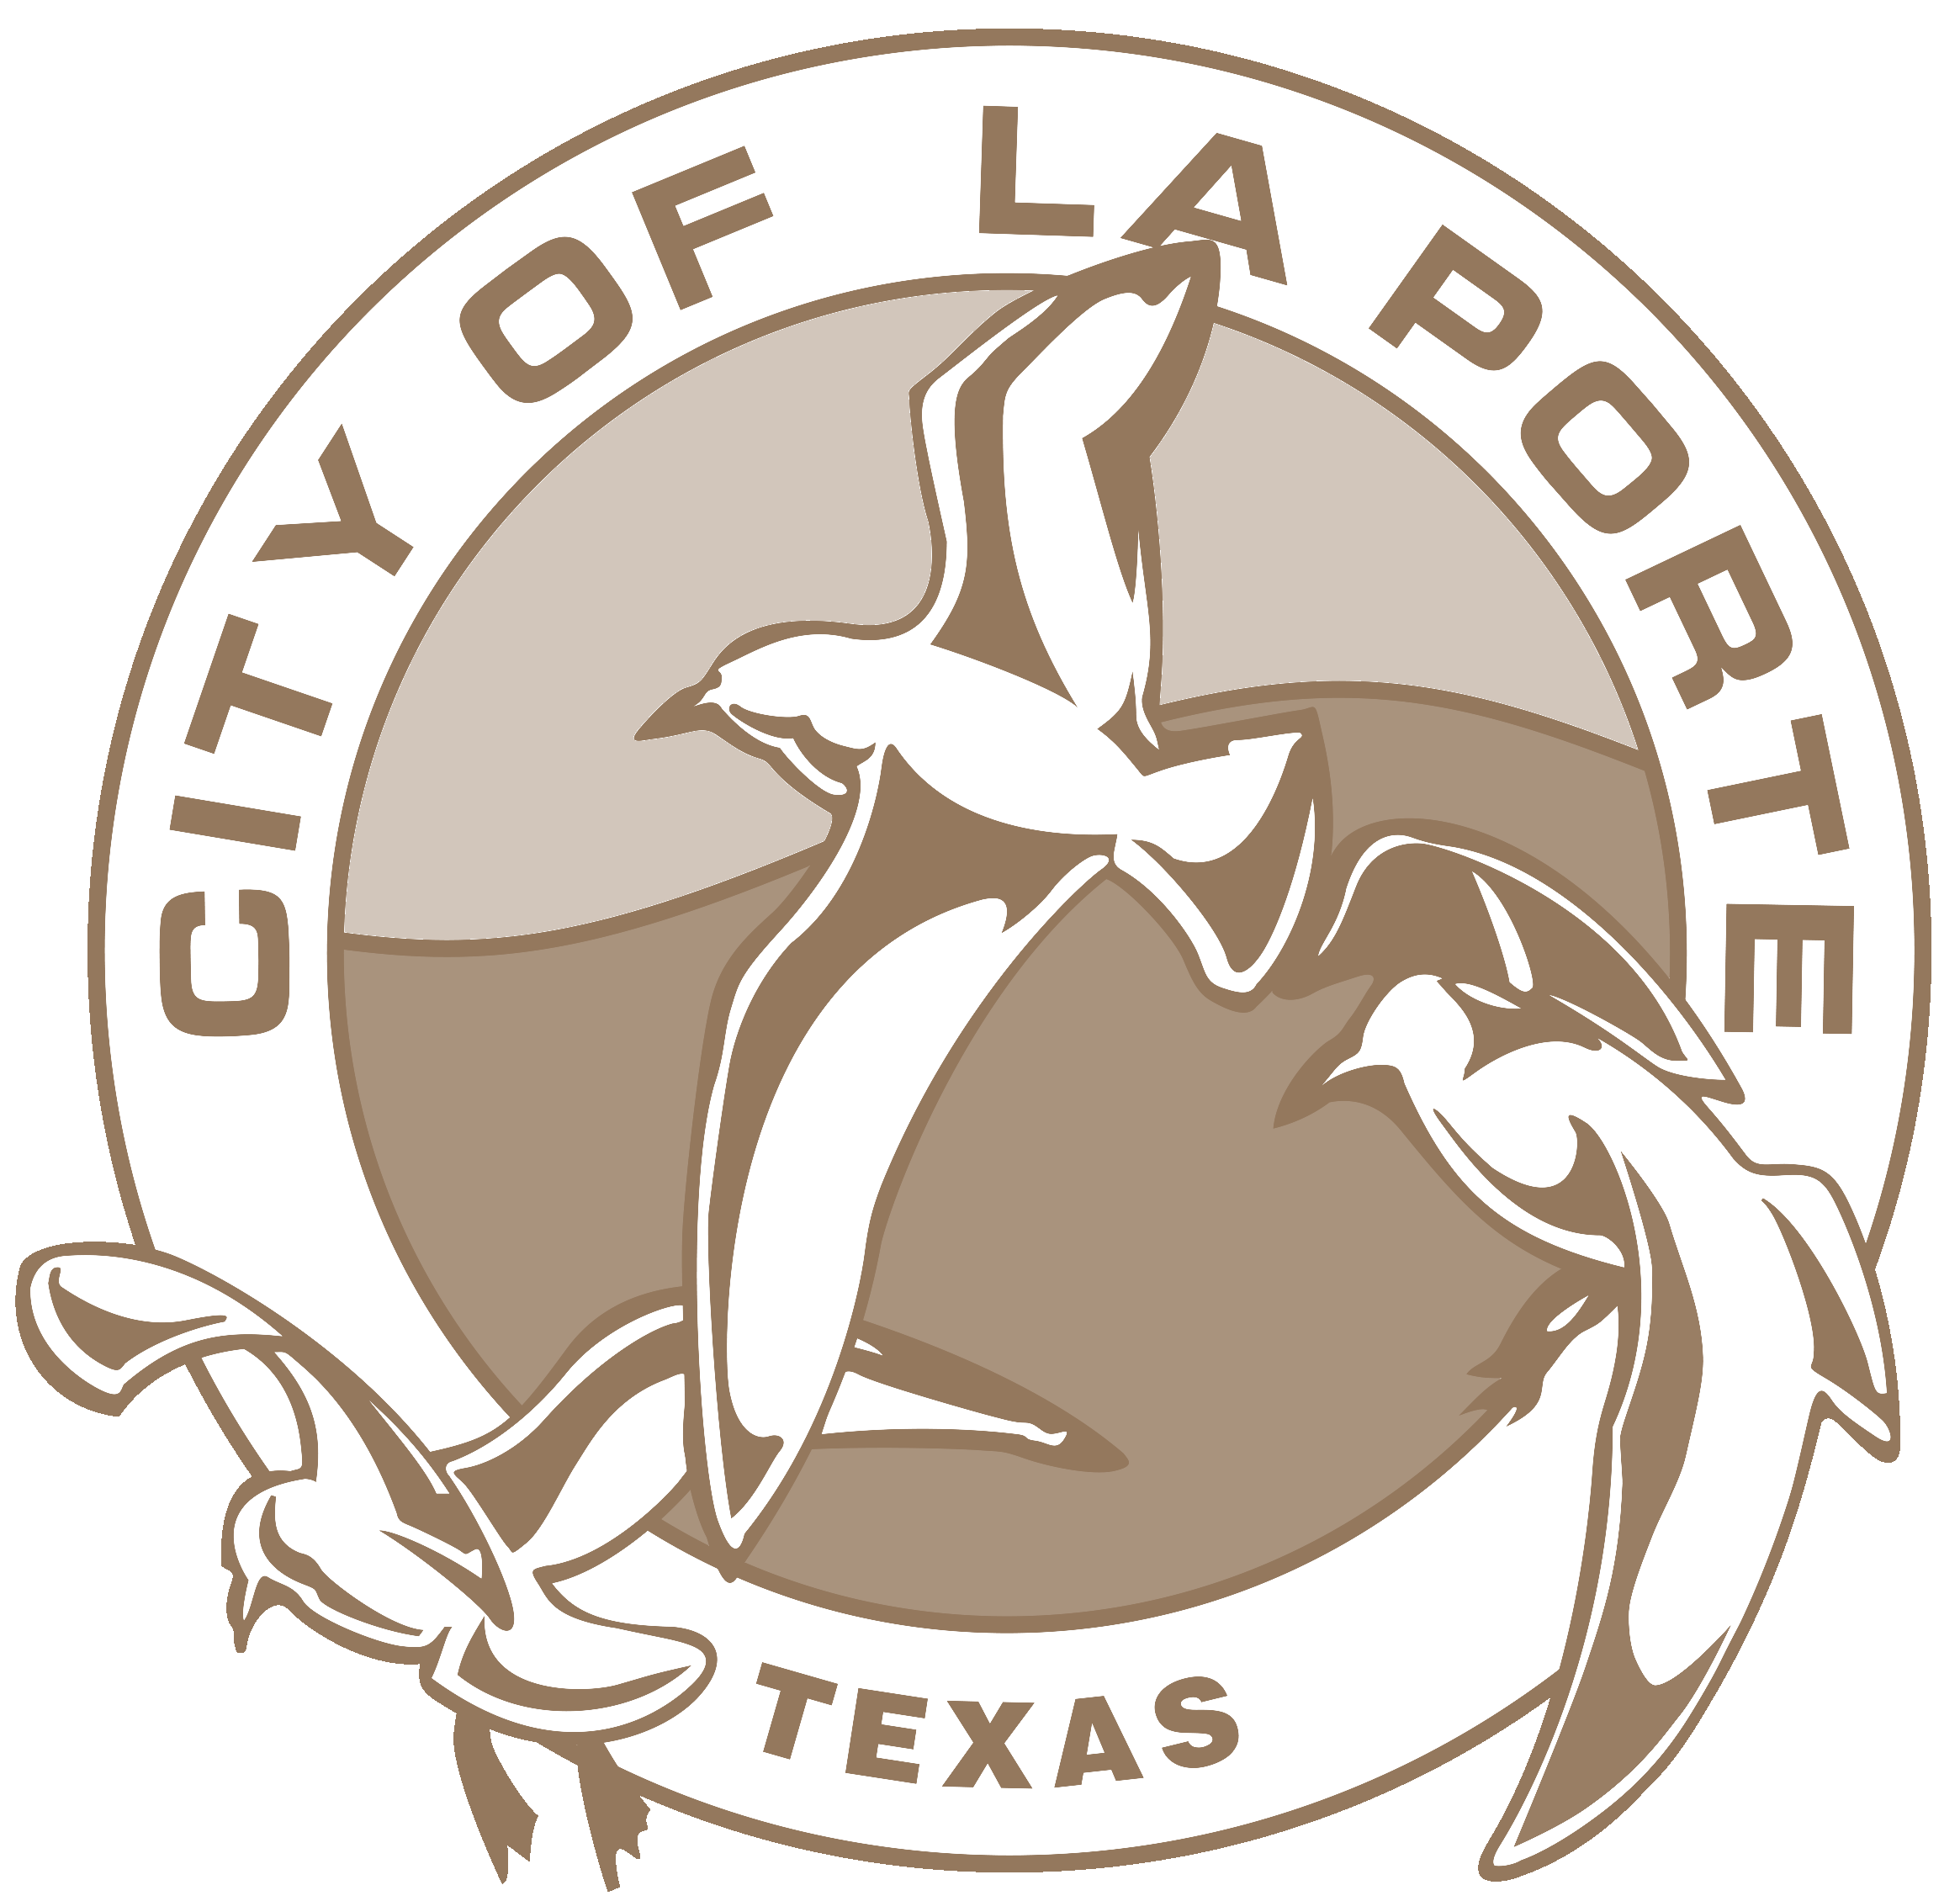 City of La Porte Texas logo